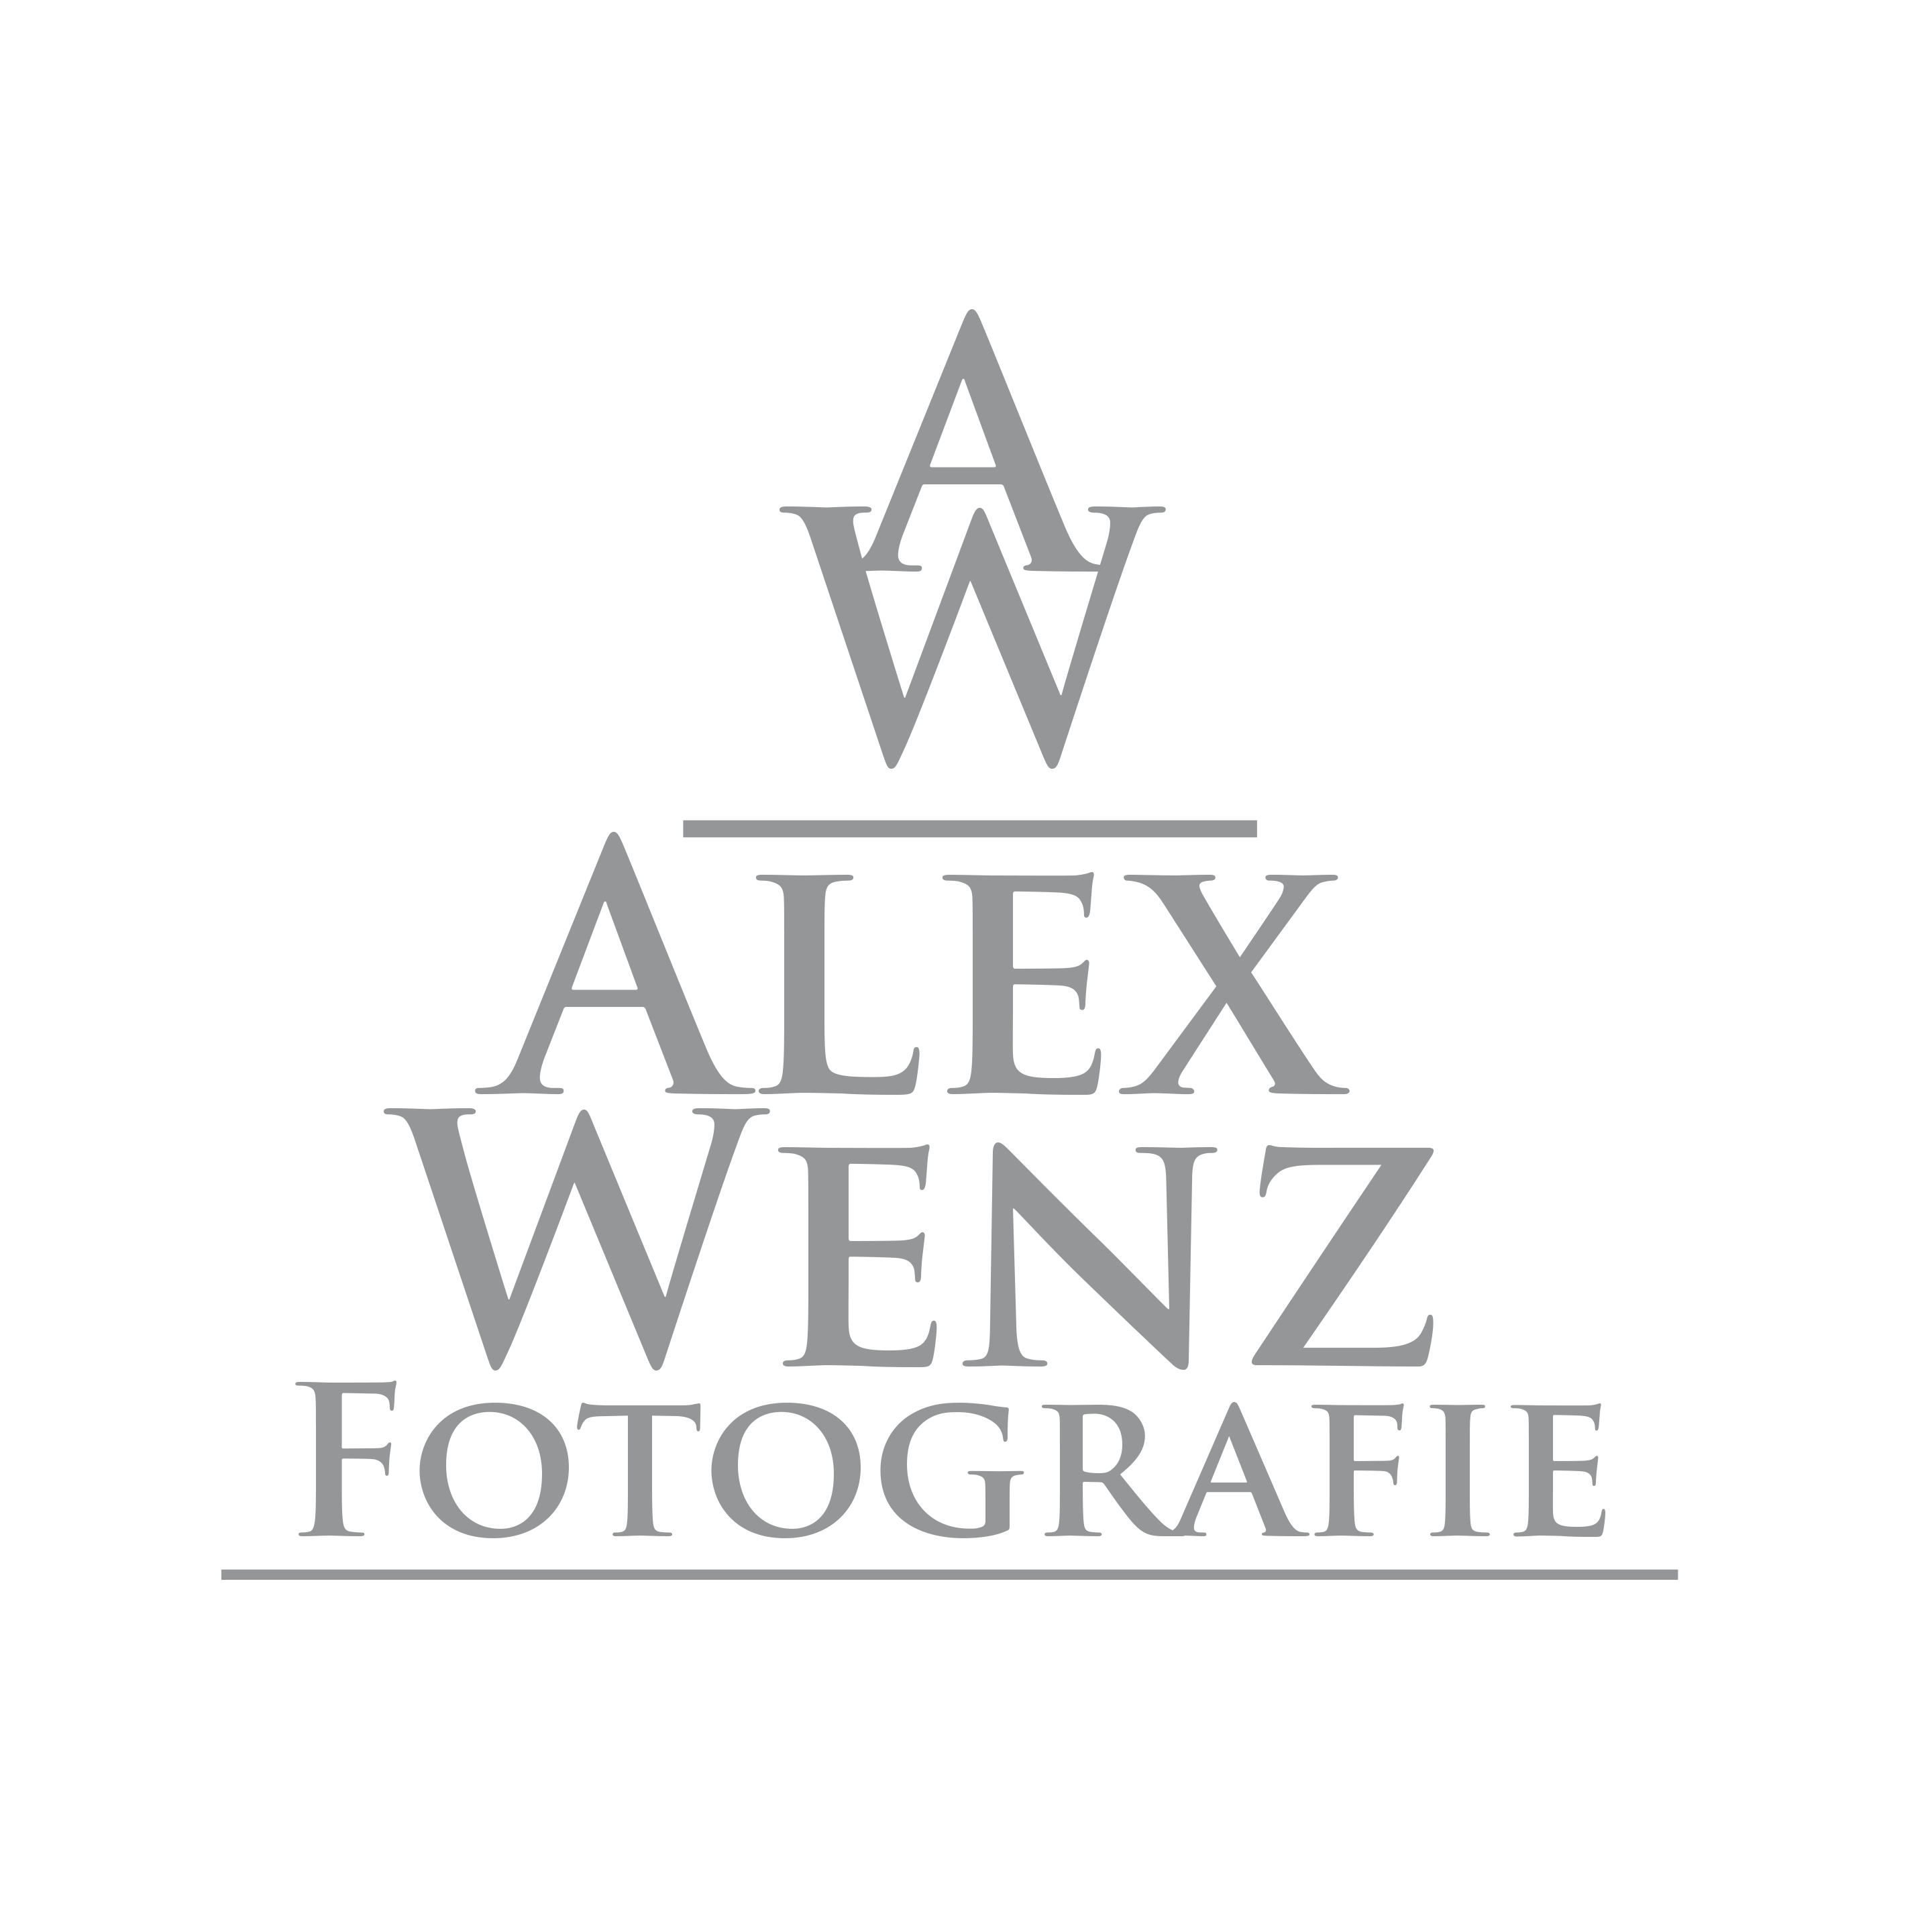 Alexej Wenzel